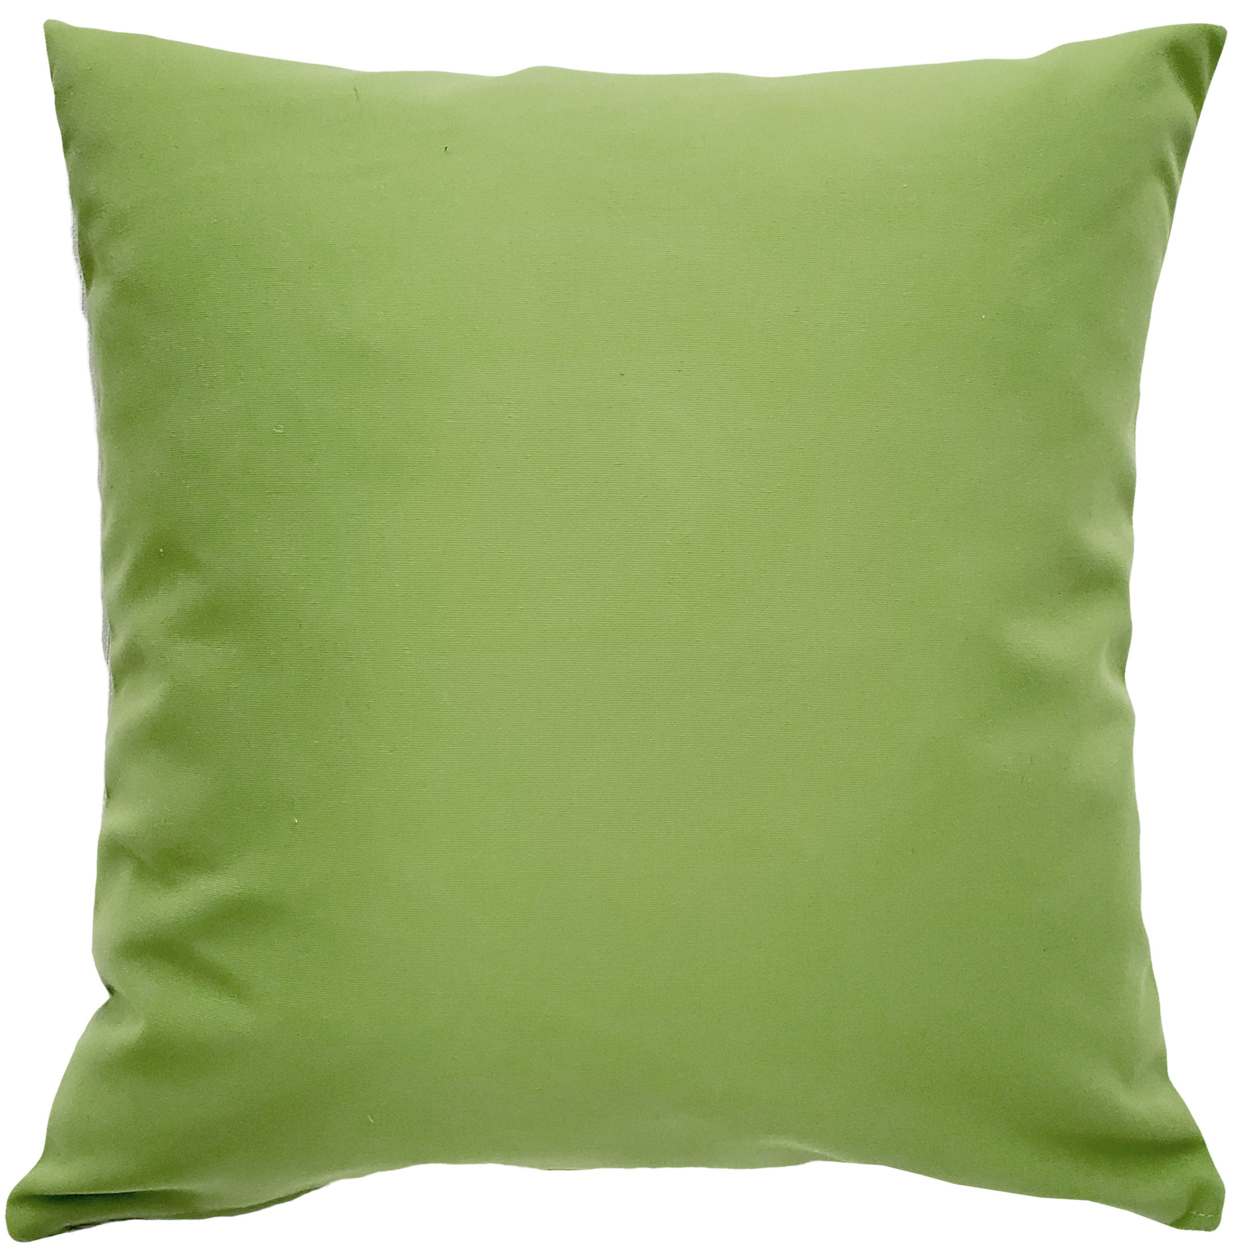 Sunbrella Ginko Green Outdoor Pillow 20x20, With Polyfill Insert